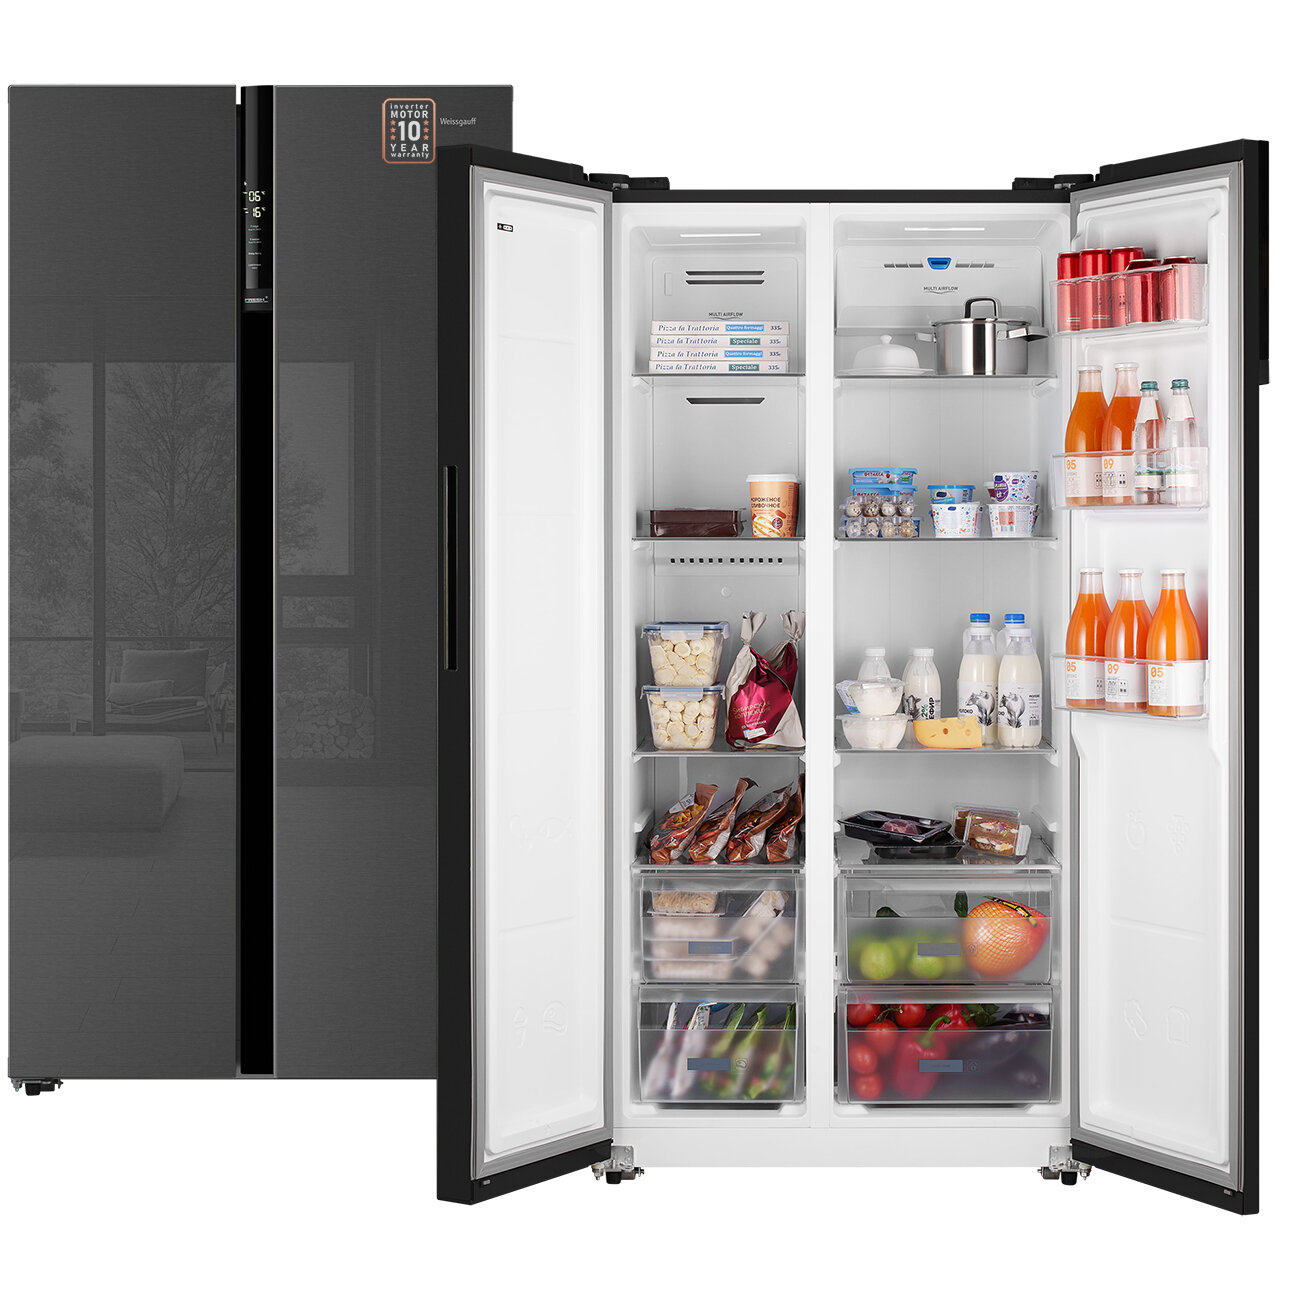 Отдельностоящий холодильник с инвертором Weissgauff WSBS 600 NoFrost Inverter Inox Glass Side by Side двухдверный, 3 года гарантии, Мощность замораживания 12 кг сутки, Объём 660 л, Сенсорное управление, Цифровой дисплей, LED освещение, A++